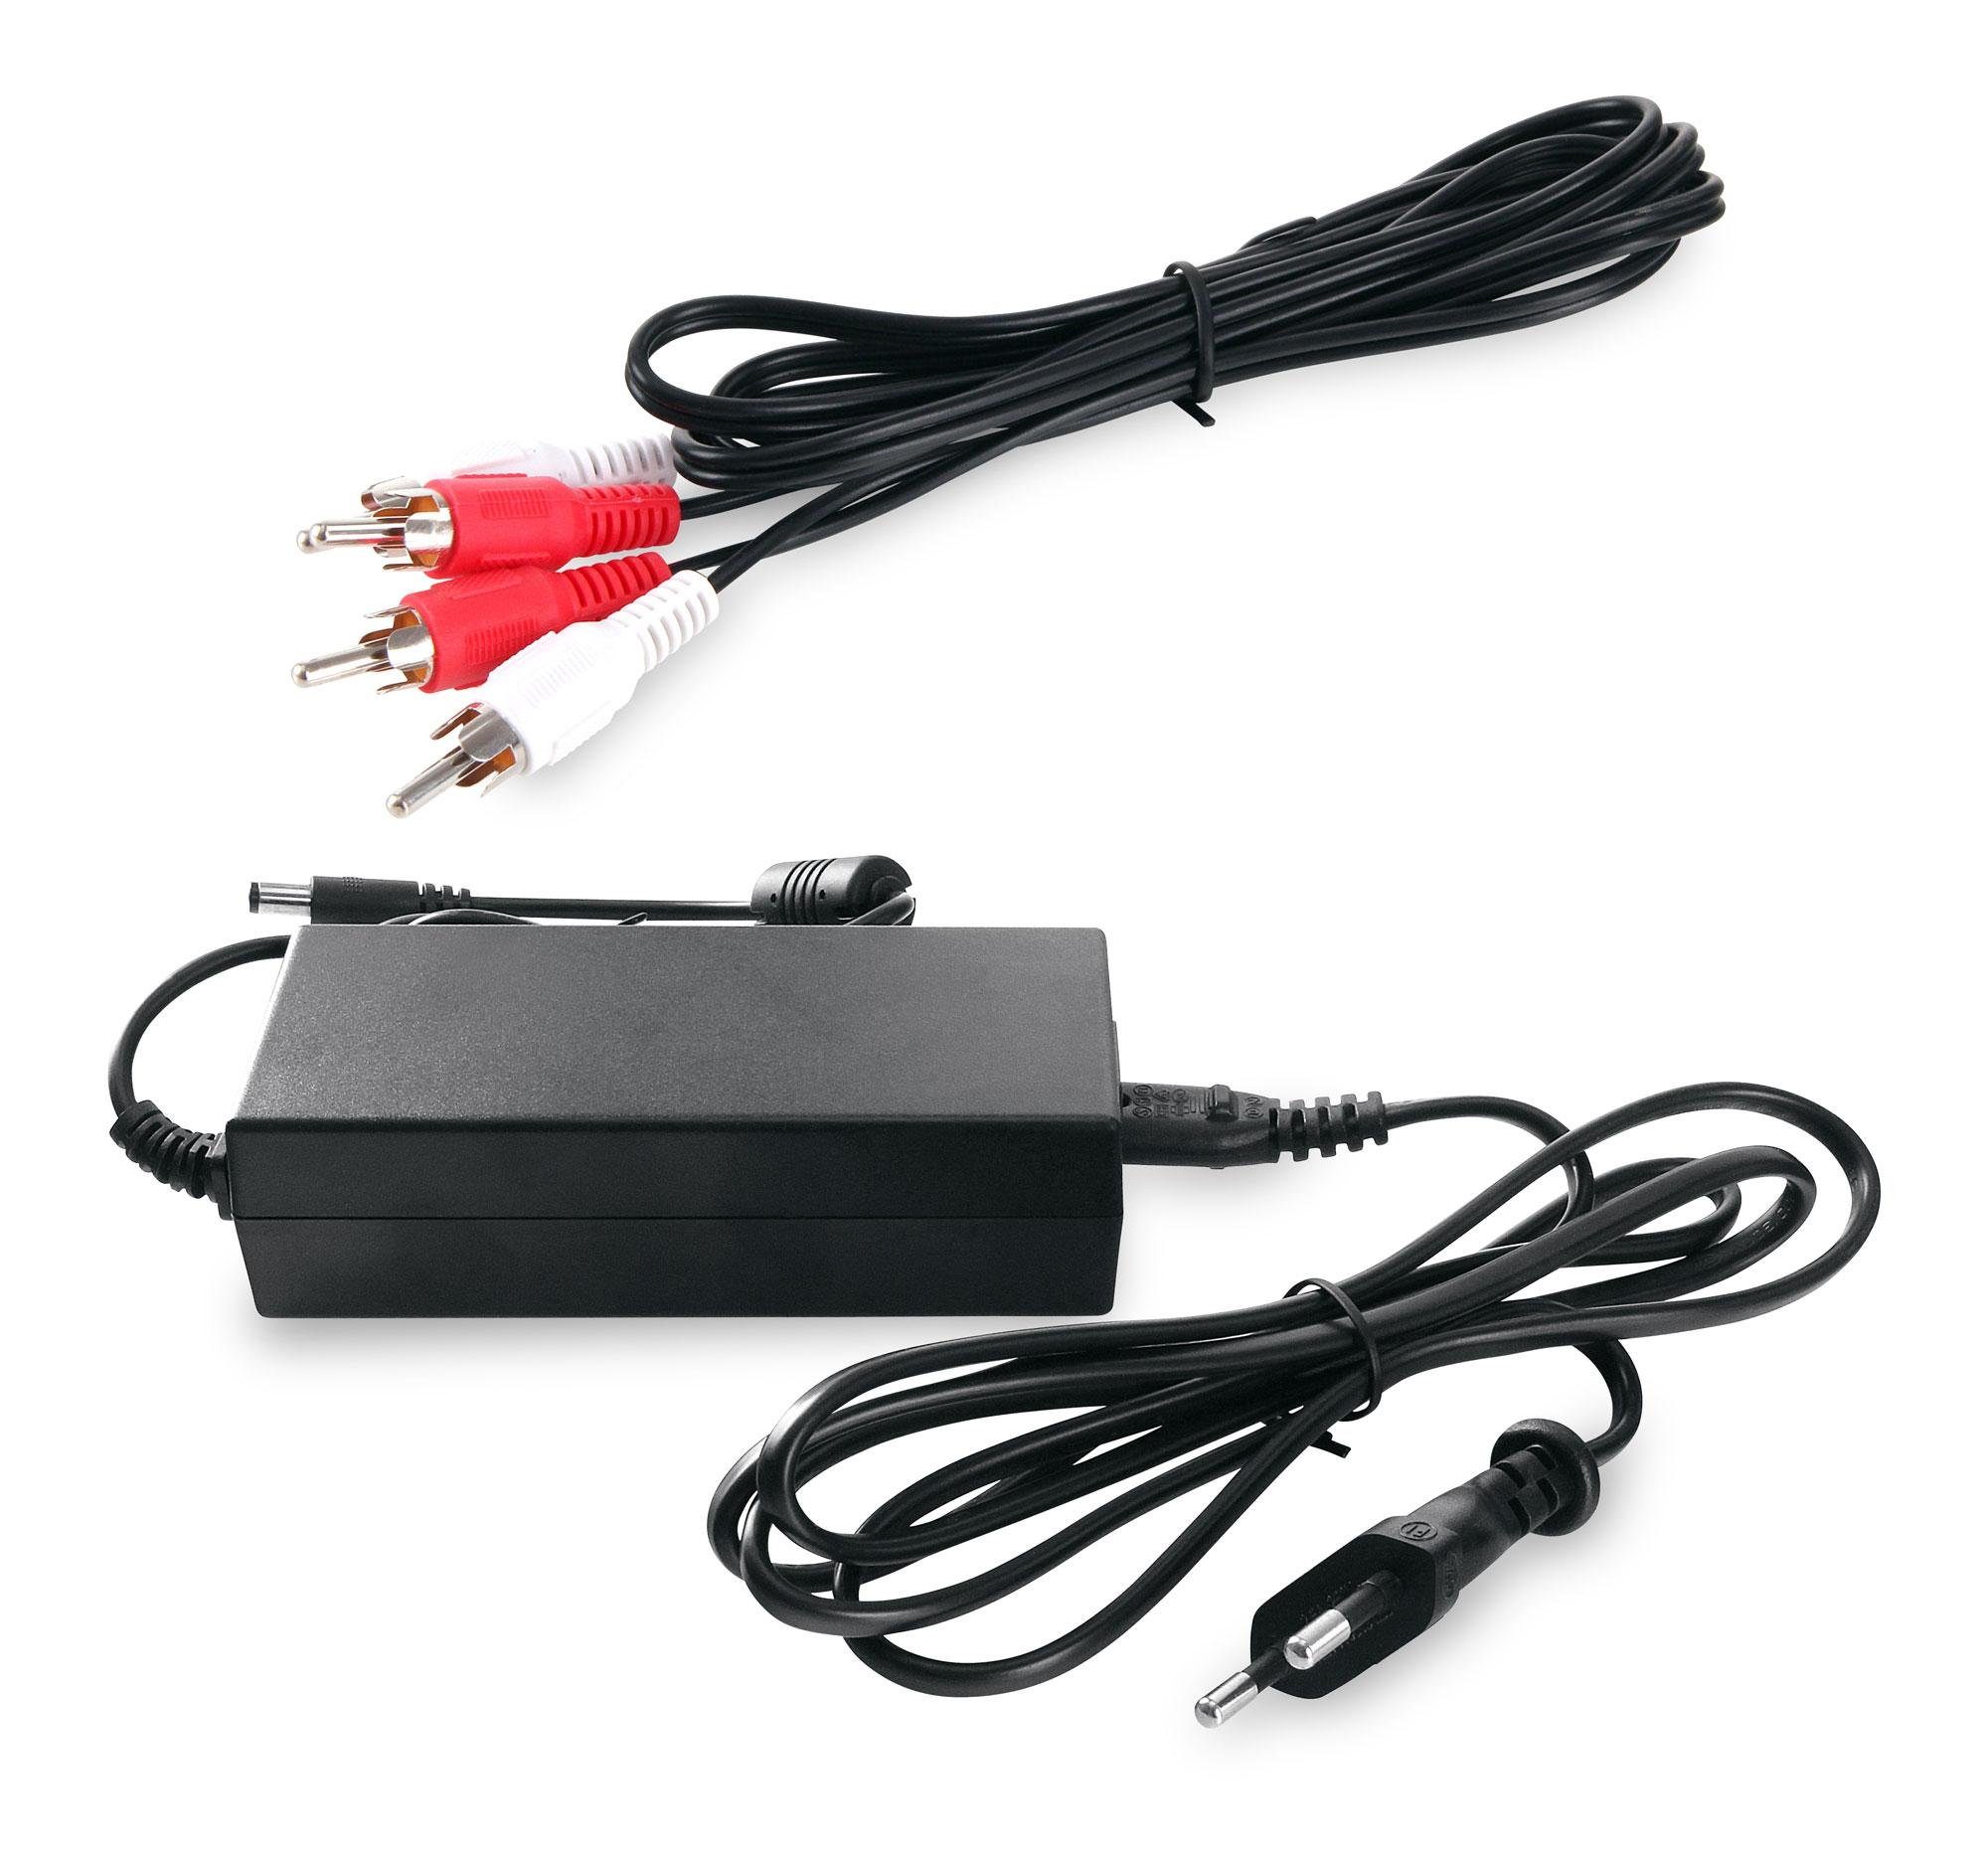 GoldenAge Beatfoxx 60 Musikbox USB-SD, mit inkl. CD-Player, (UKW/MW-Radio, W, Untergestell Retro AUX) Jukebox mit Plattenspieler Stereoanlage XXL LED-Beleuchtung, Bluetooth,